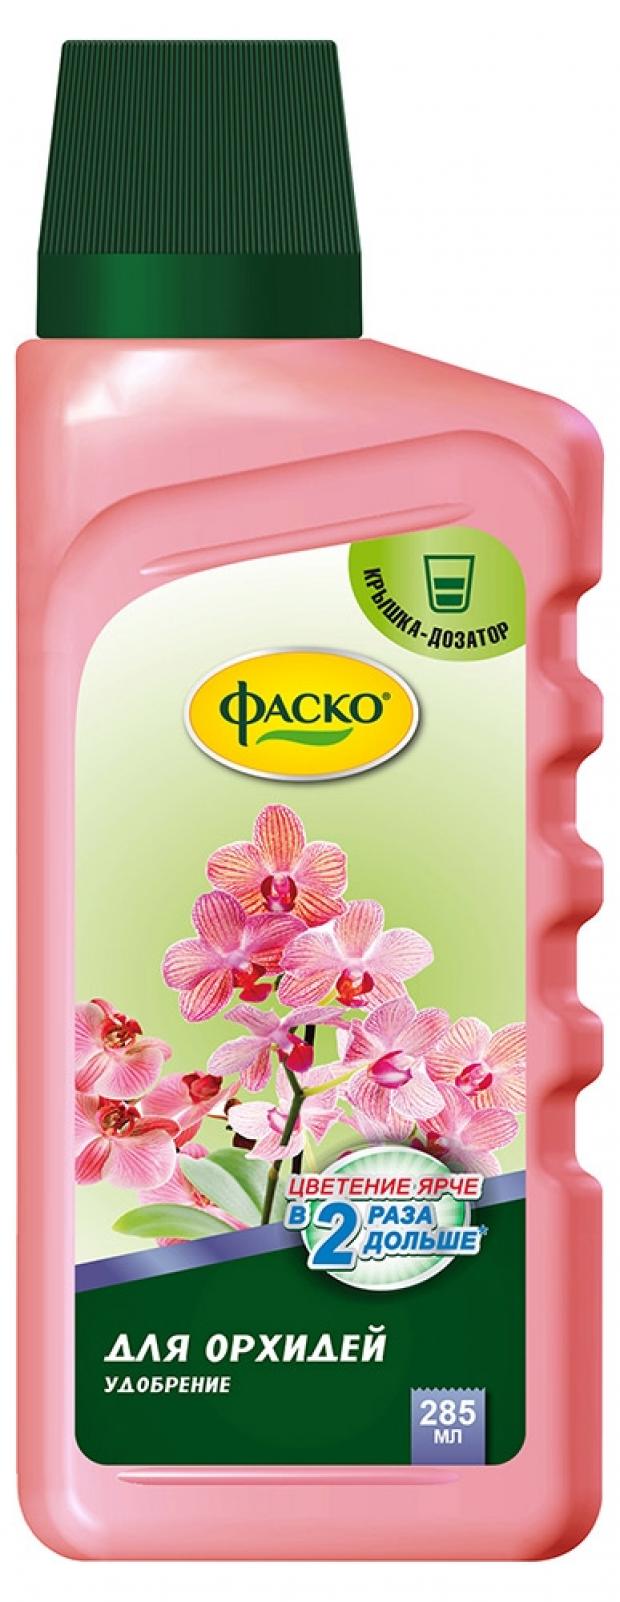 Удобрение Фаско Цветочное счастье Для орхидей минеральное, 285 мл